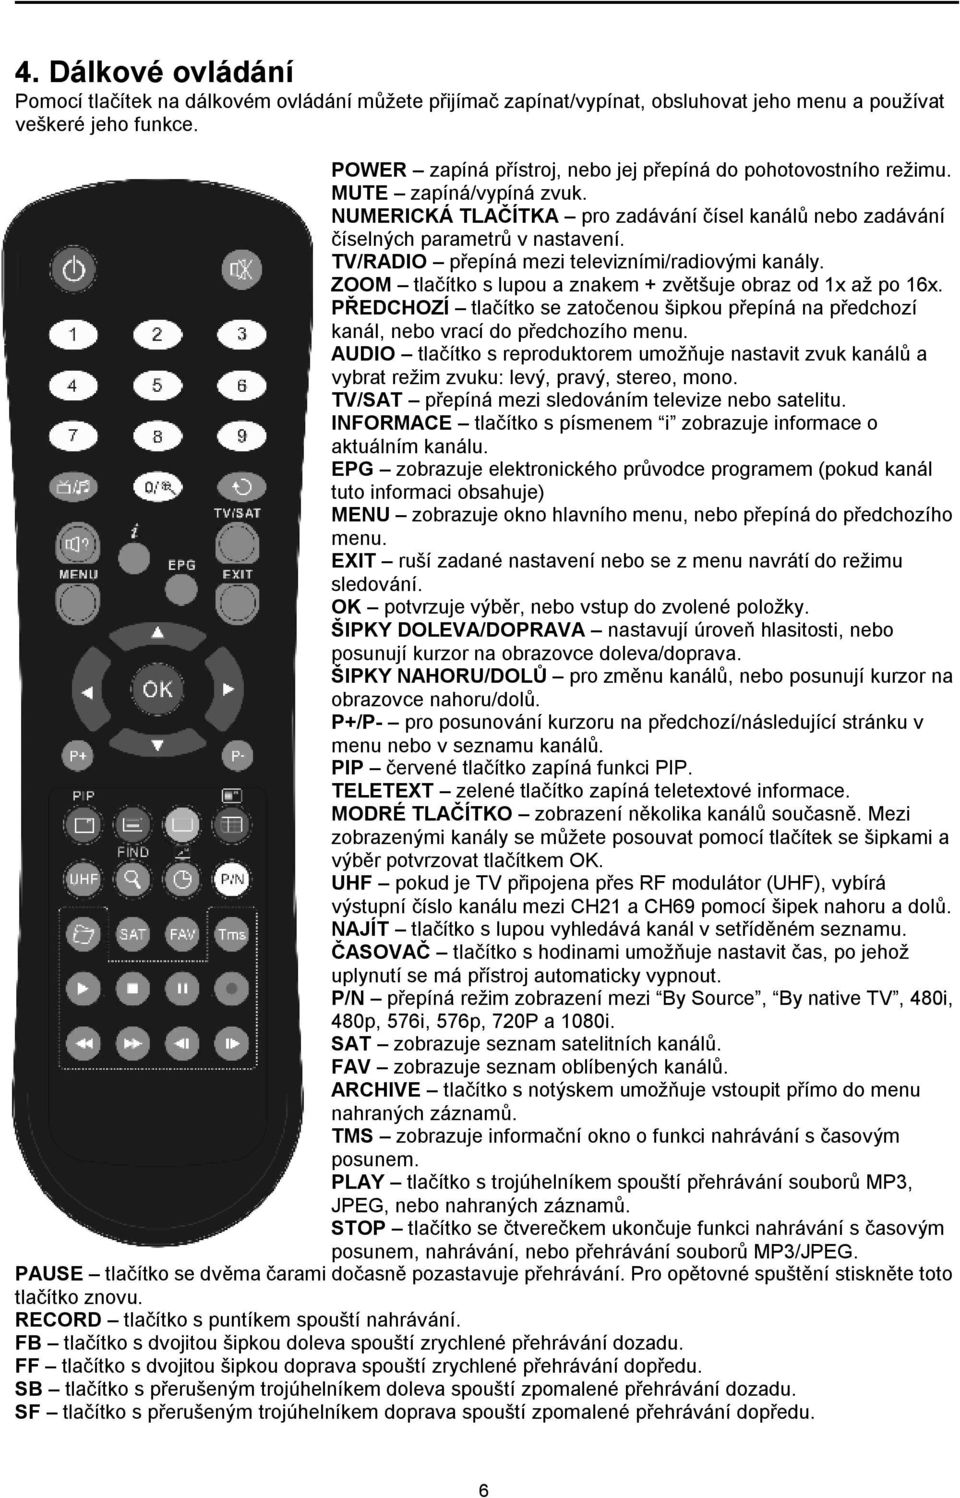 TV/RADIO přepíná mezi televizními/radiovými kanály. ZOOM tlačítko s lupou a znakem + zvětšuje obraz od 1x až po 16x.